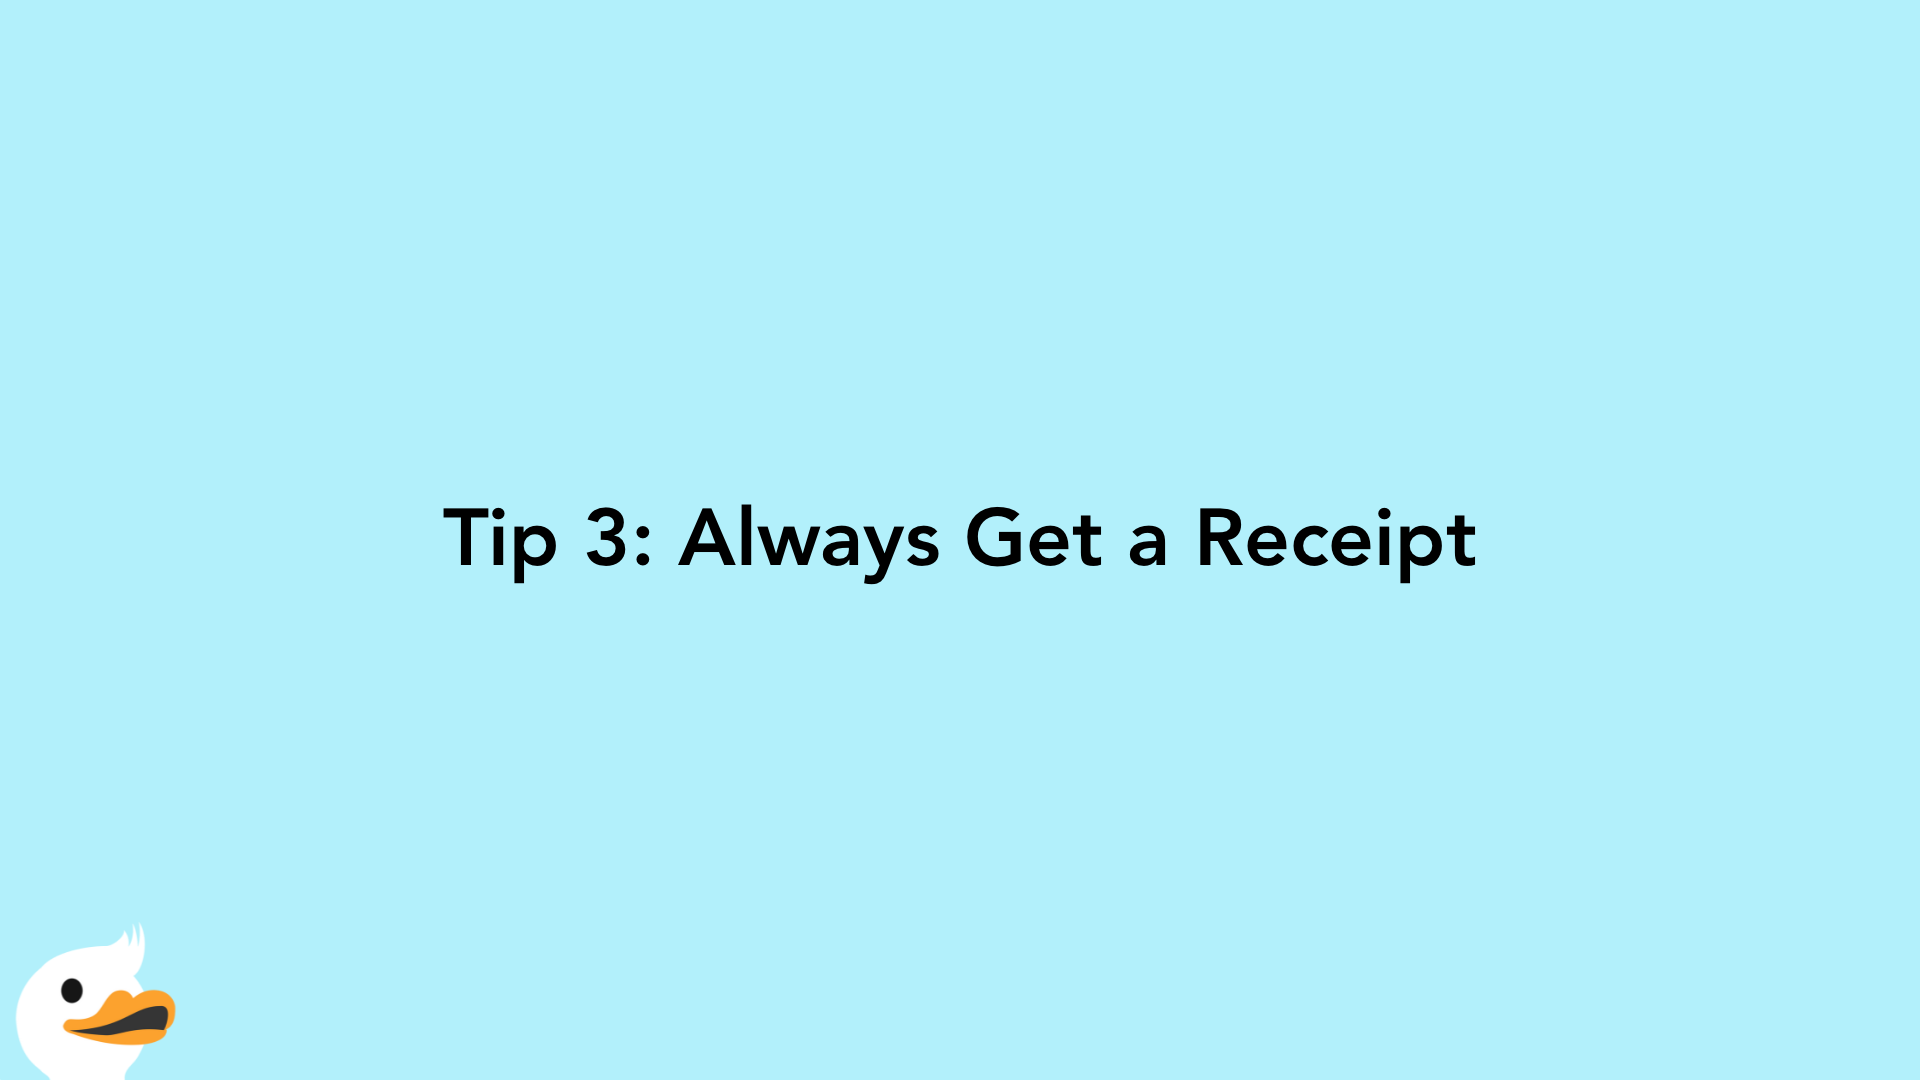 Tip 3: Always Get a Receipt